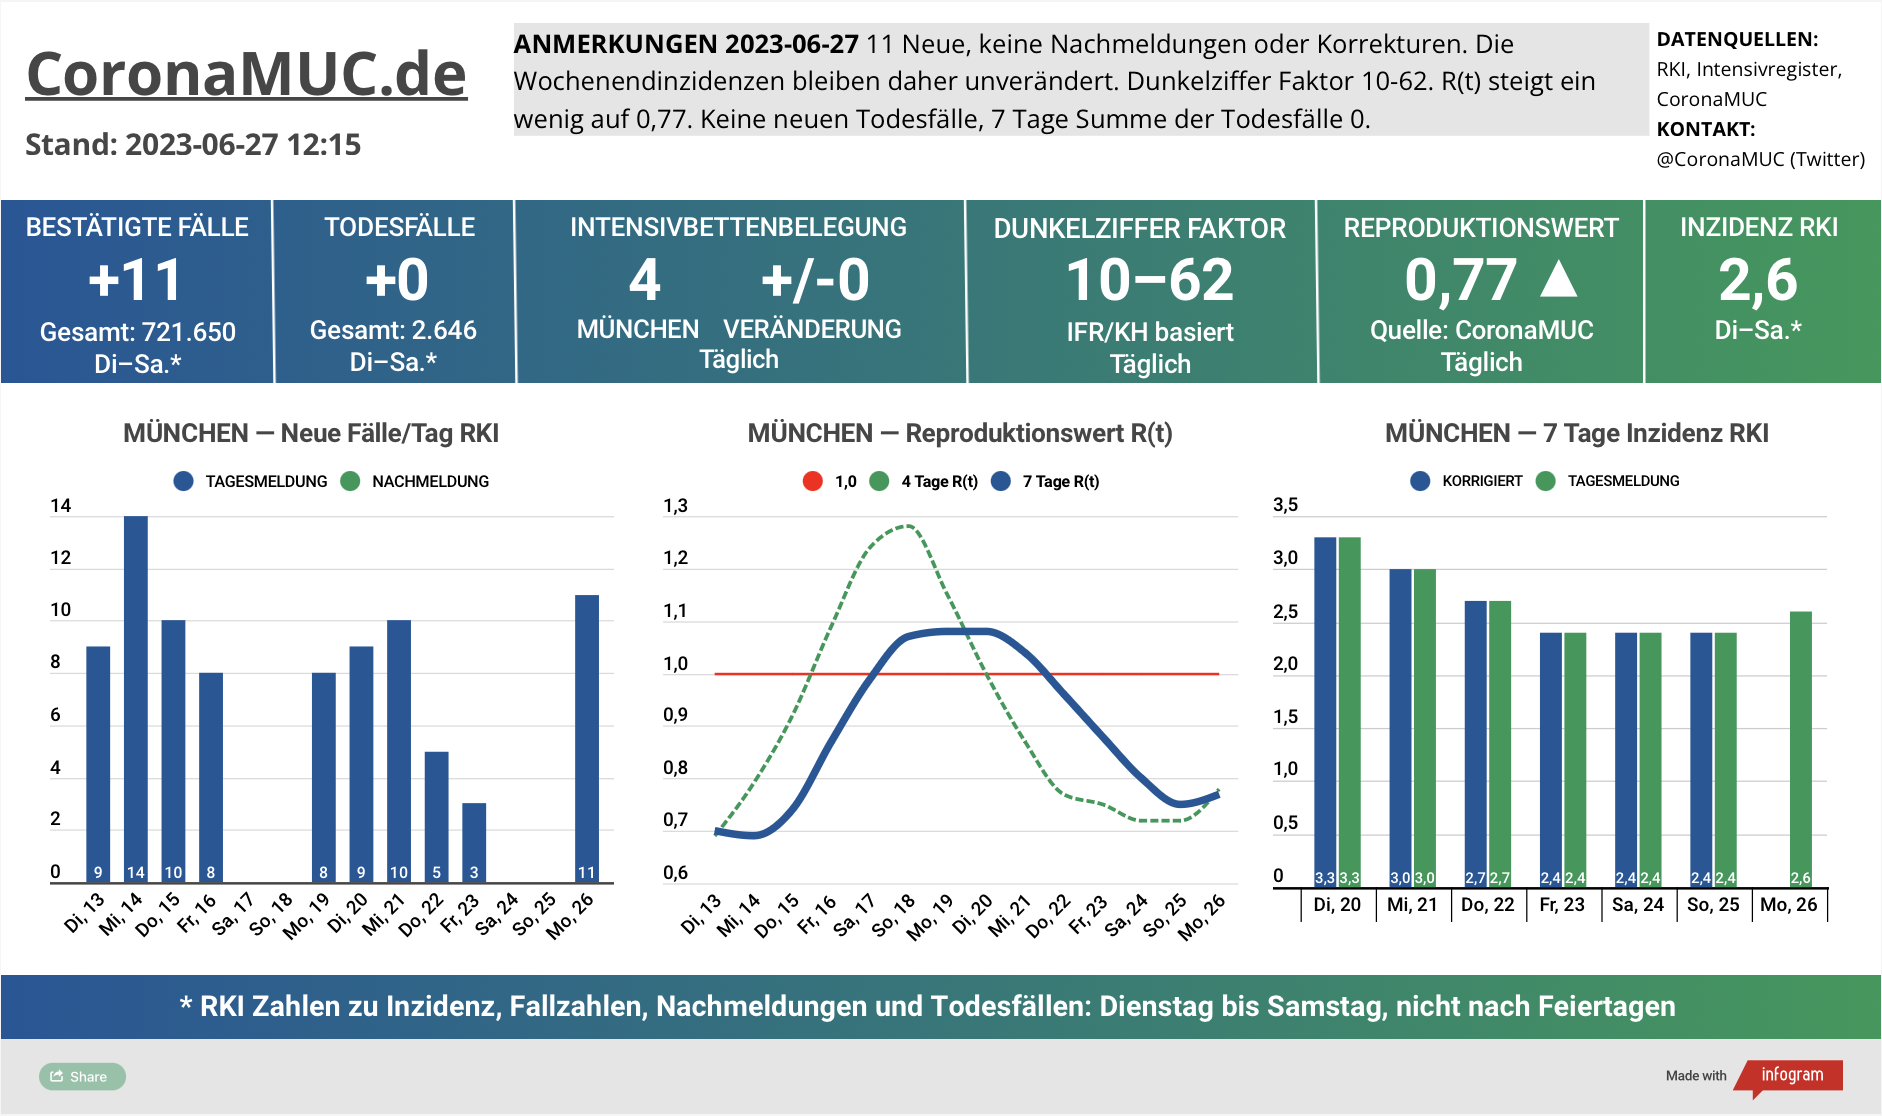 2023-06-27 Dashboard mit den Zahlen für München. Drei Graphen. Erste zeigt Neu- und Nachmeldungen, heute durch Wochenendzahlen etwas höher. Zweite zeigt R(t) Wert für München, der leicht auf 0,77 steigt. Dritte zeigt Inzidenz, die zwar weiter weit unter 50 liegt aber wegen mangelnder PCR Tests wenig aussagekräftig ist.